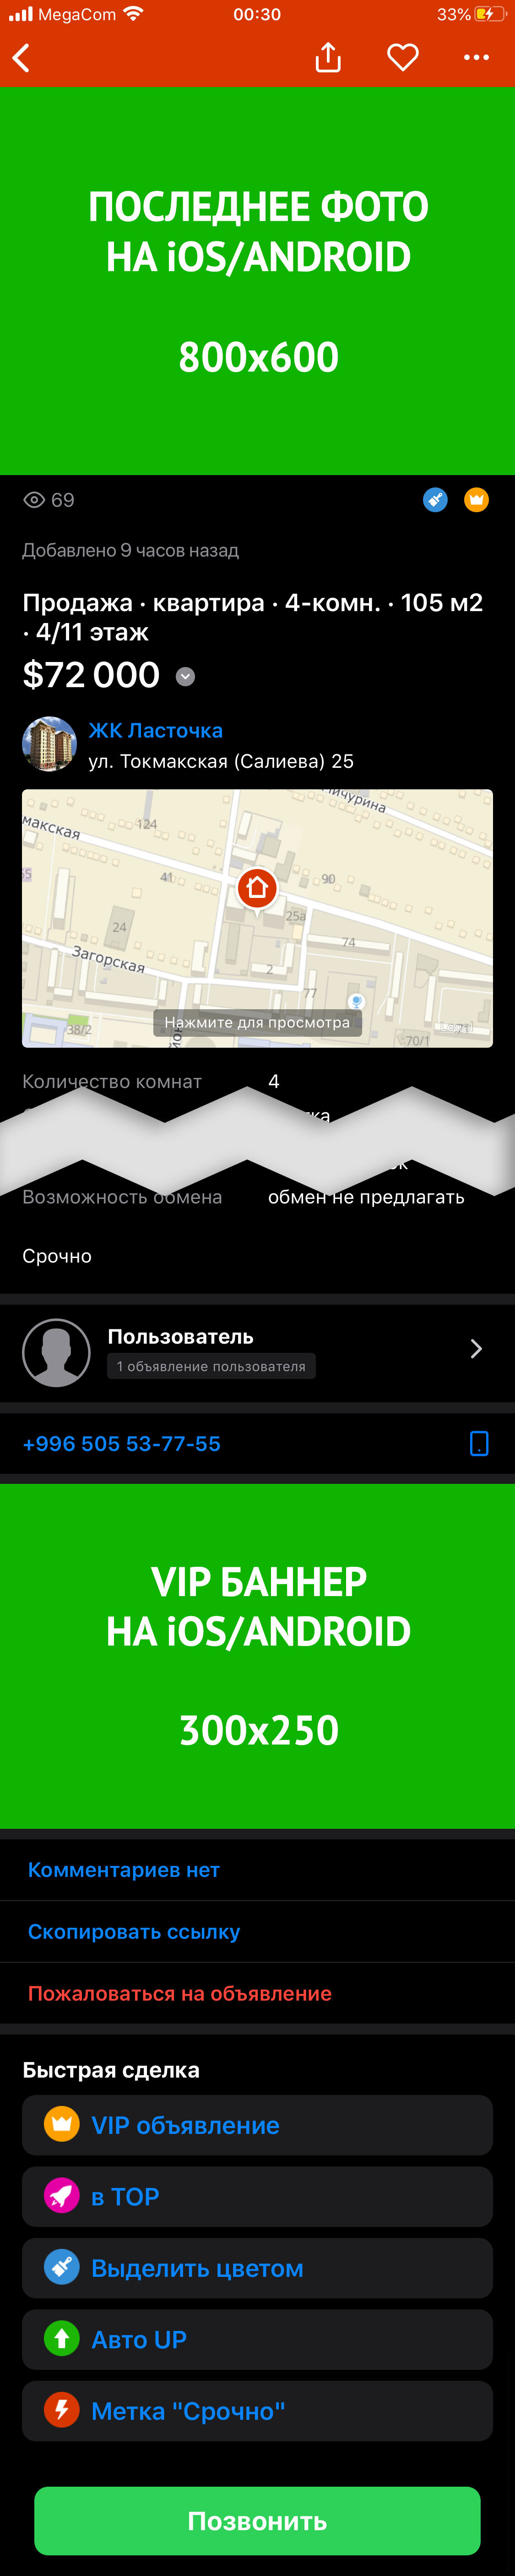 Реклама в мобильном приложении